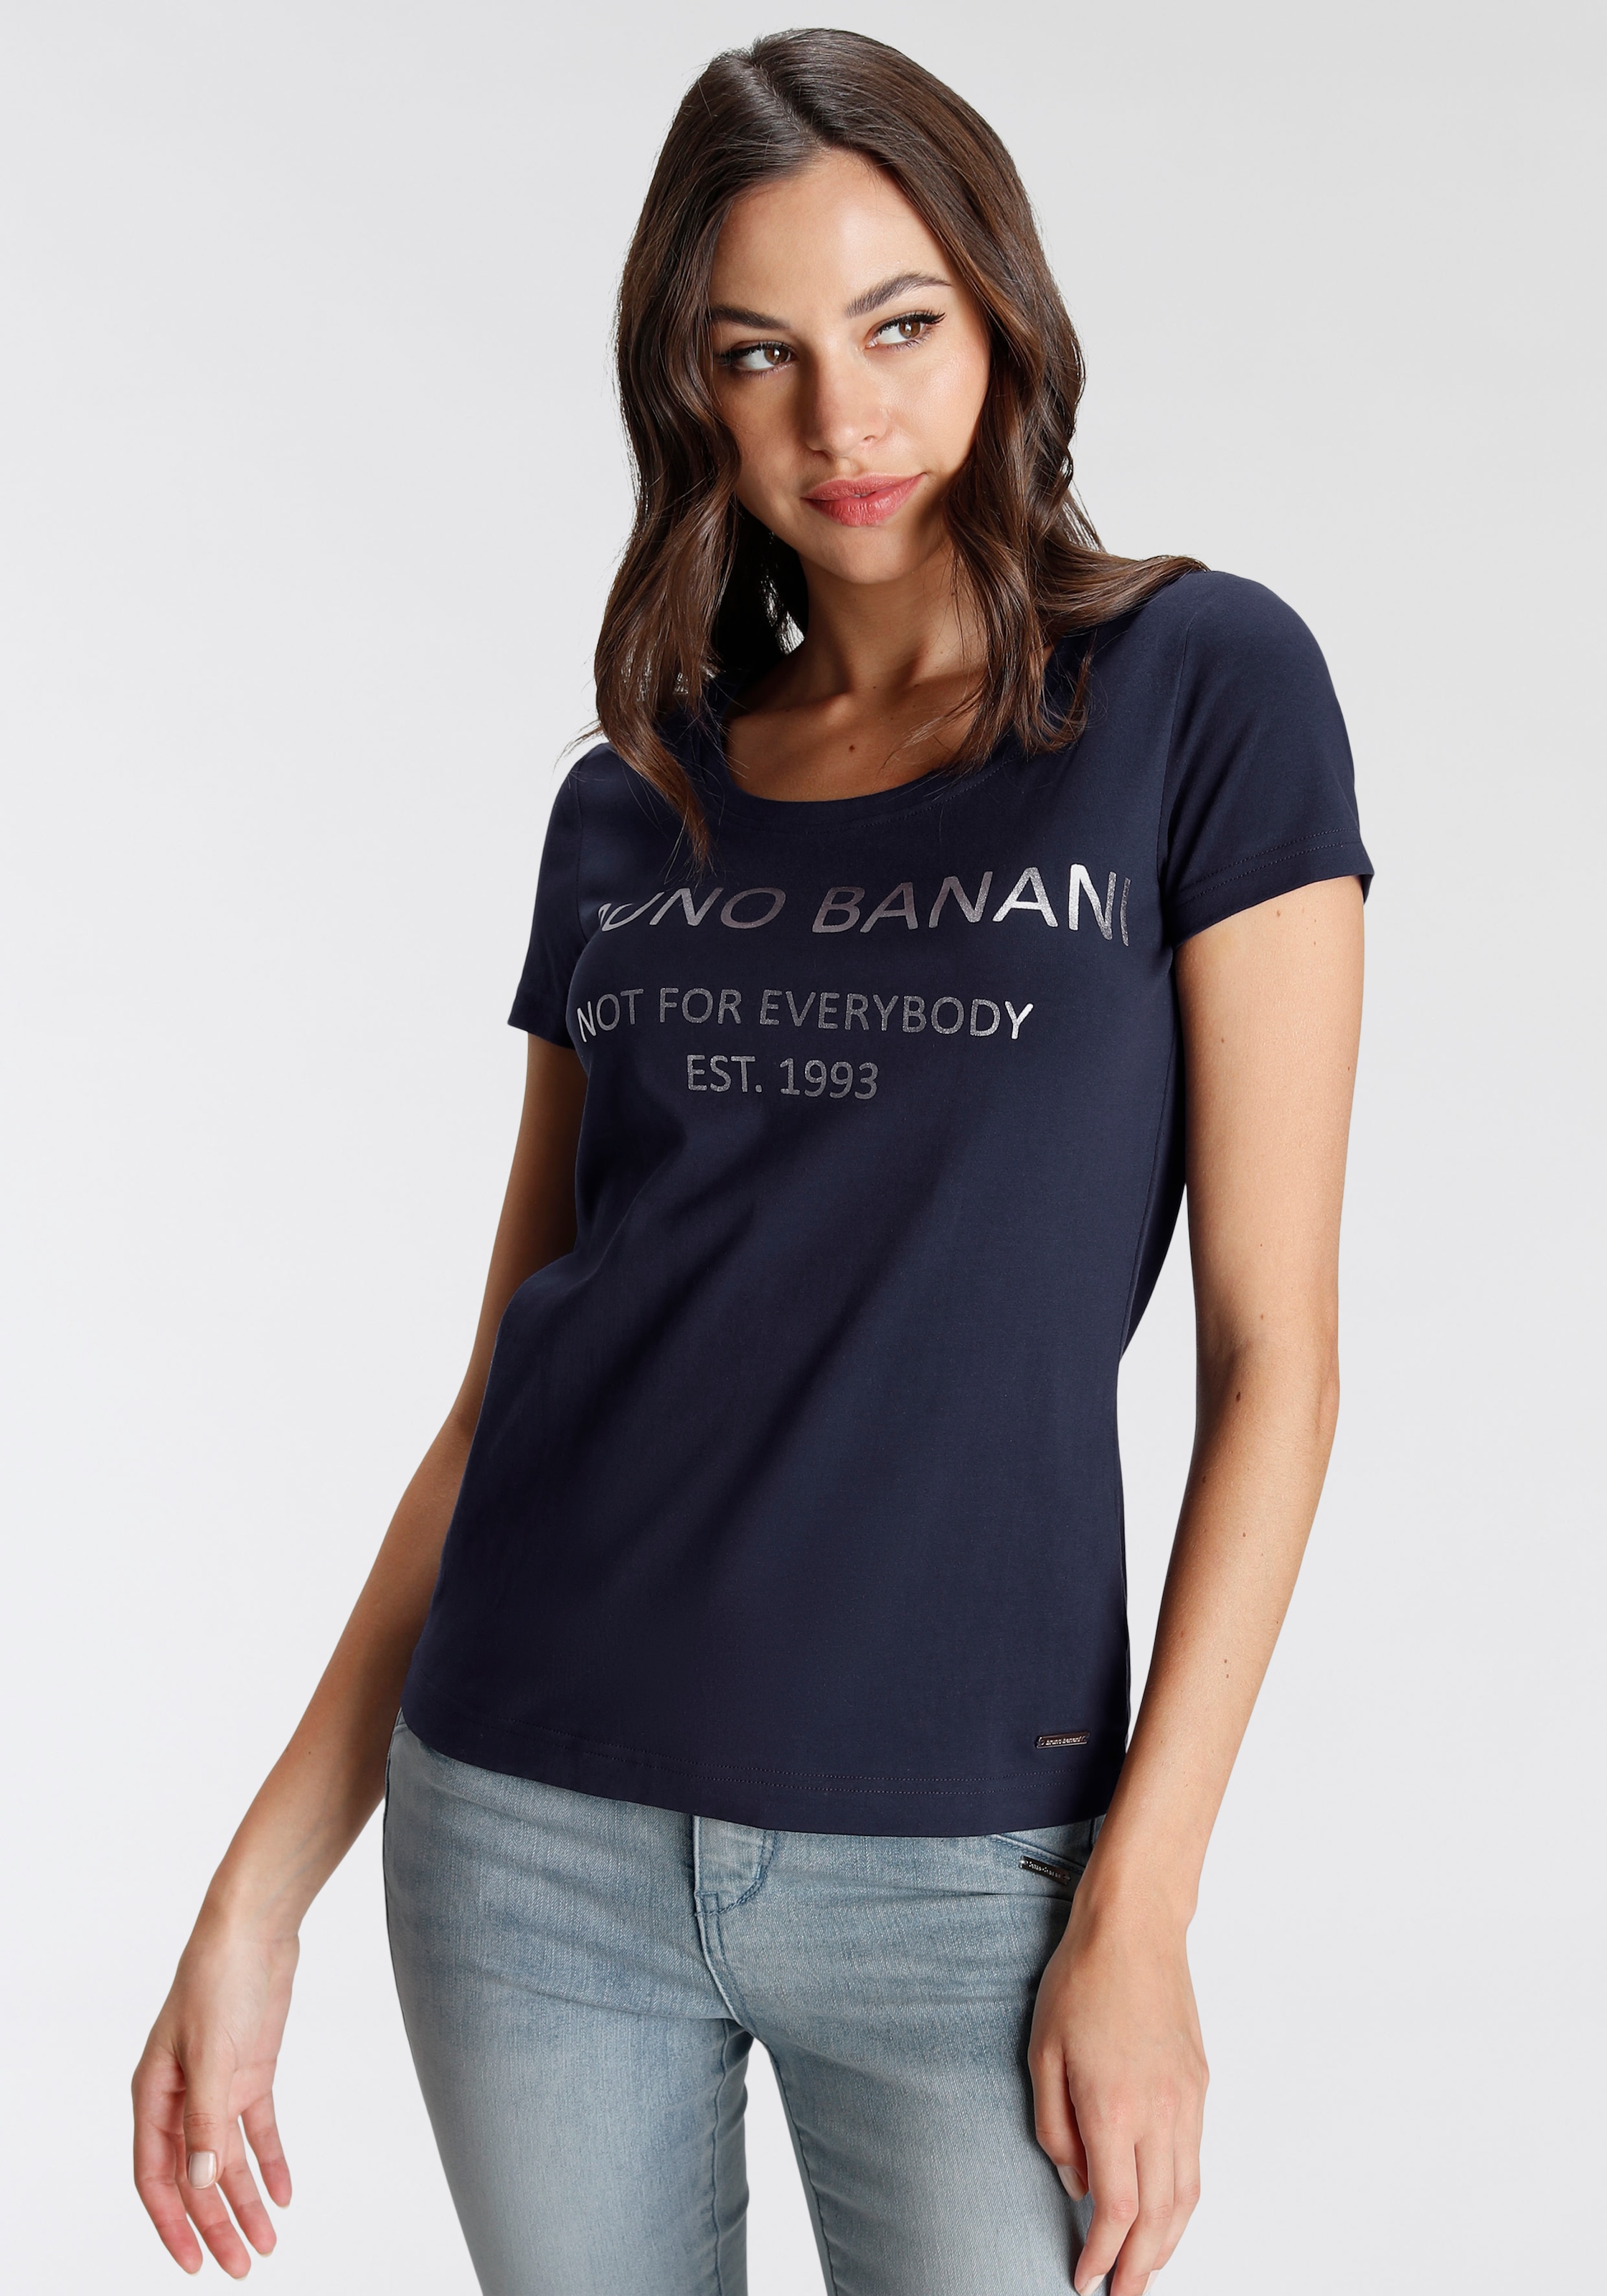 bei Banani OTTO NEUE mit kaufen KOLLEKTION T-Shirt, Logodruck online Bruno goldfarbenem